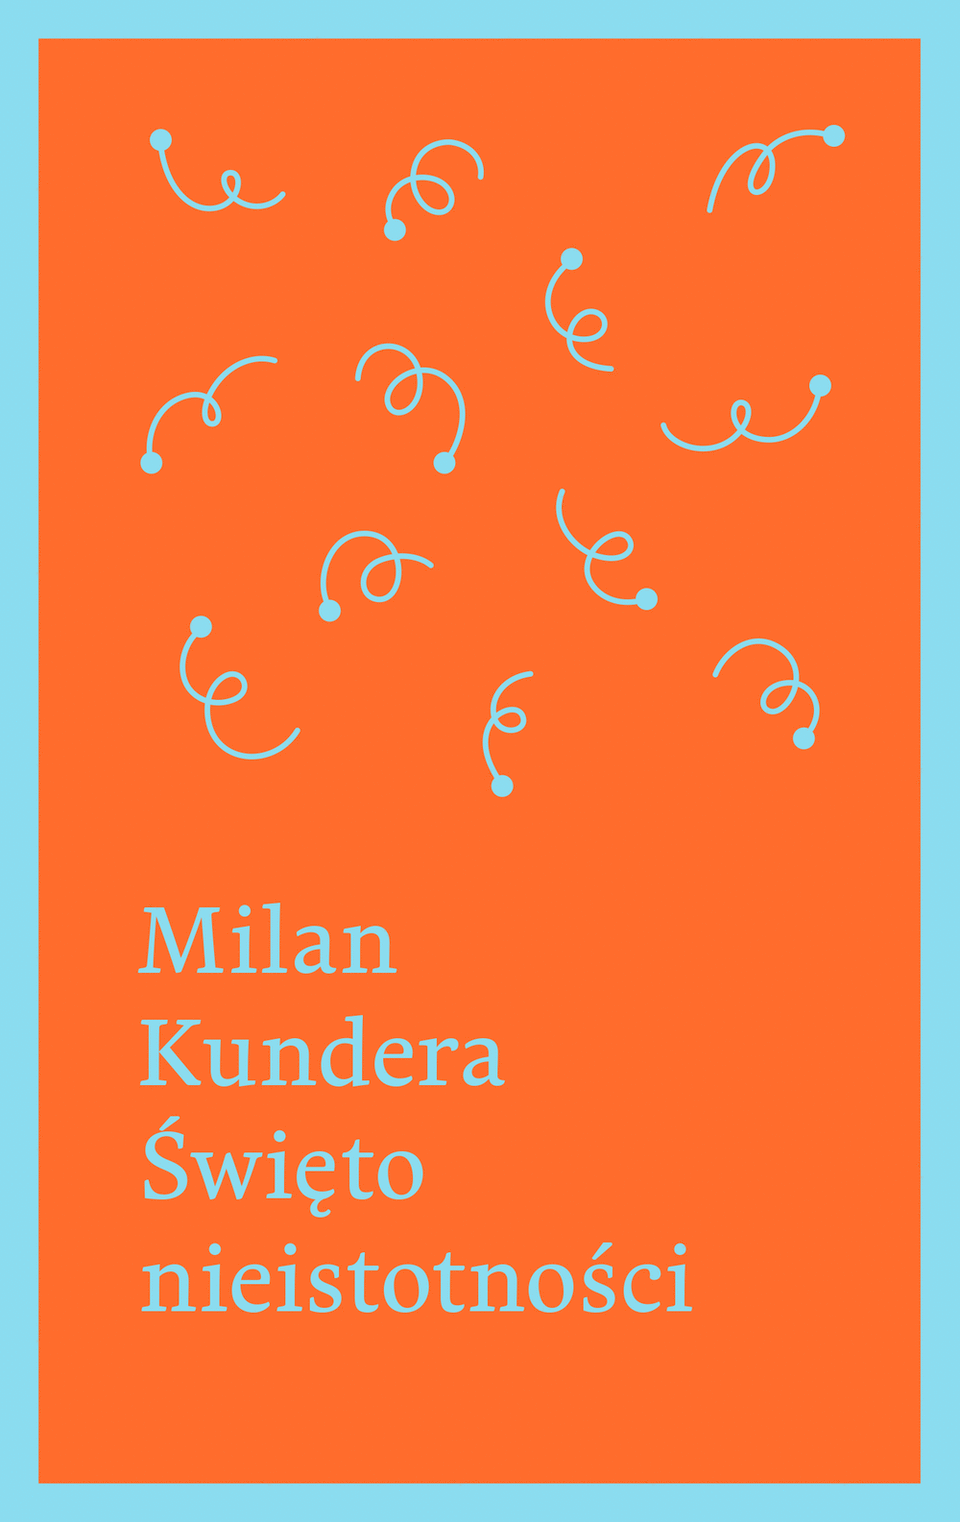 For title 'Święto nieistotności' cover was not found